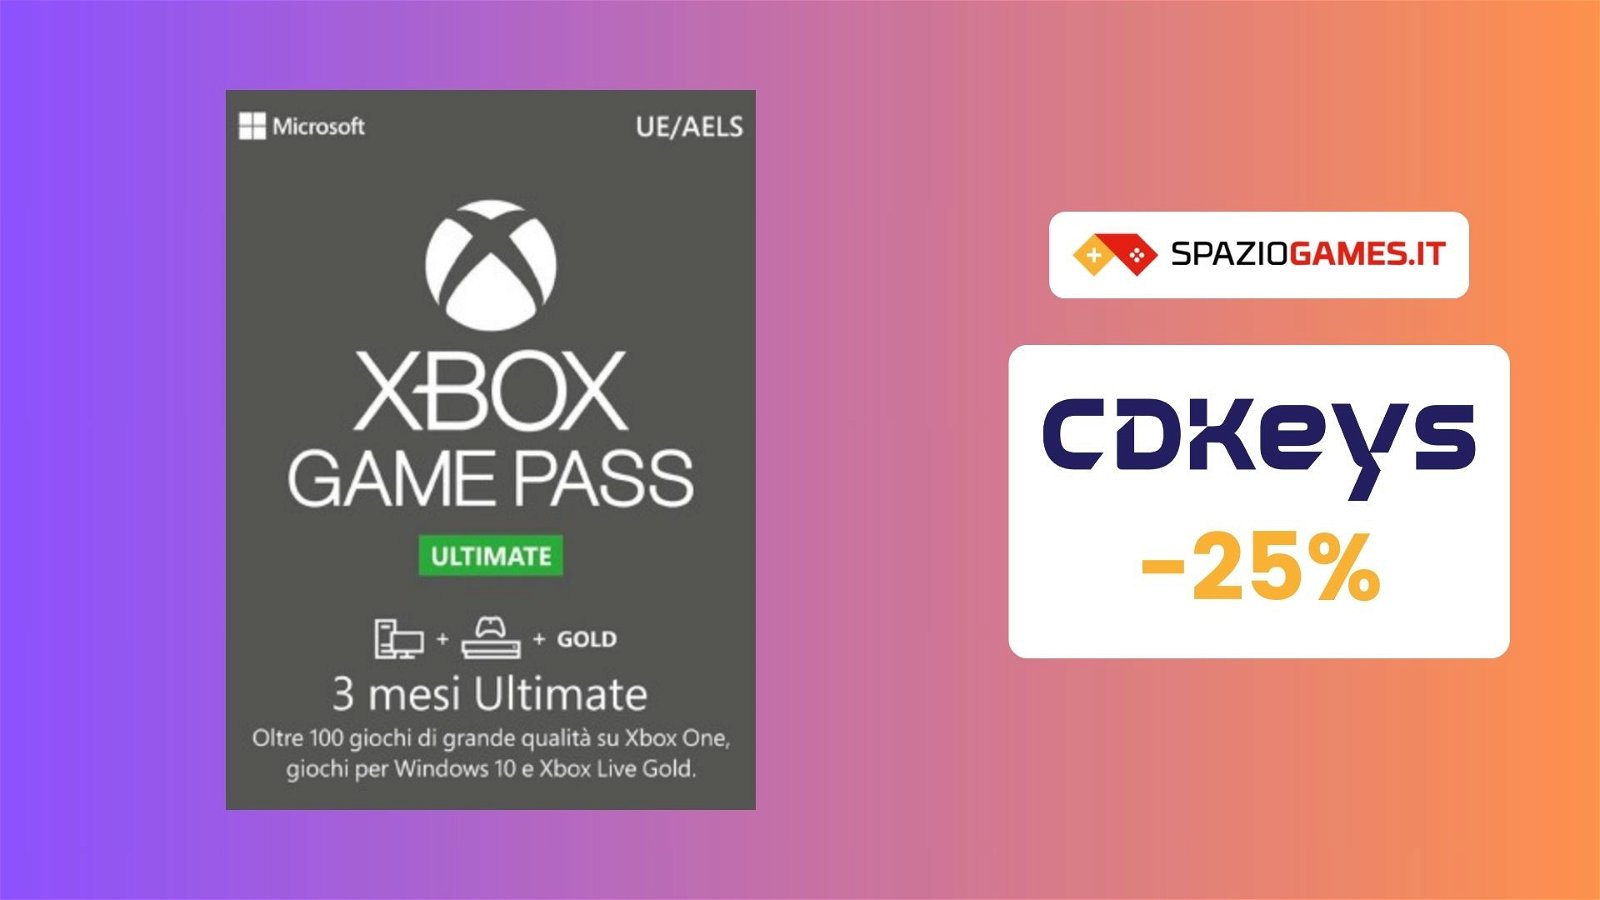 Xbox Game Pass in aumento? Fate scorta su CDKeys a PREZZO SCONTATO!